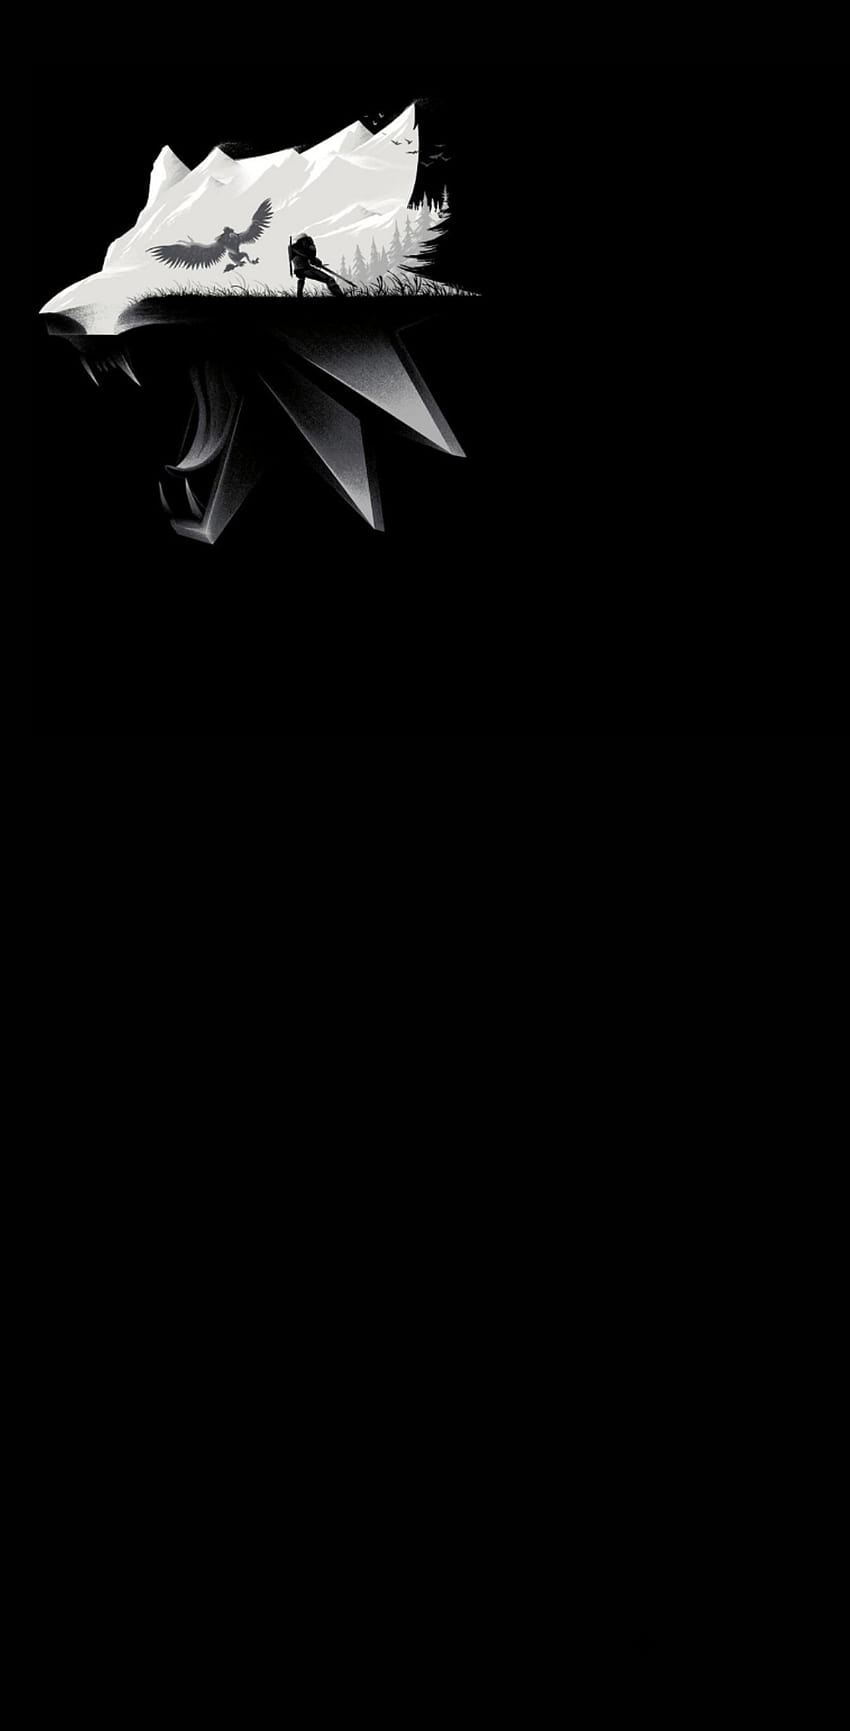 Cùng chiêm ngưỡng vẻ đẹp của hình nền đen Witcher 3 cho điện thoại. Hãy tận hưởng một không gian tĩnh lặng và bí ẩn từ bộ sưu tập ảnh độc đáo này. Không thể bỏ qua trên thiết bị của bạn.